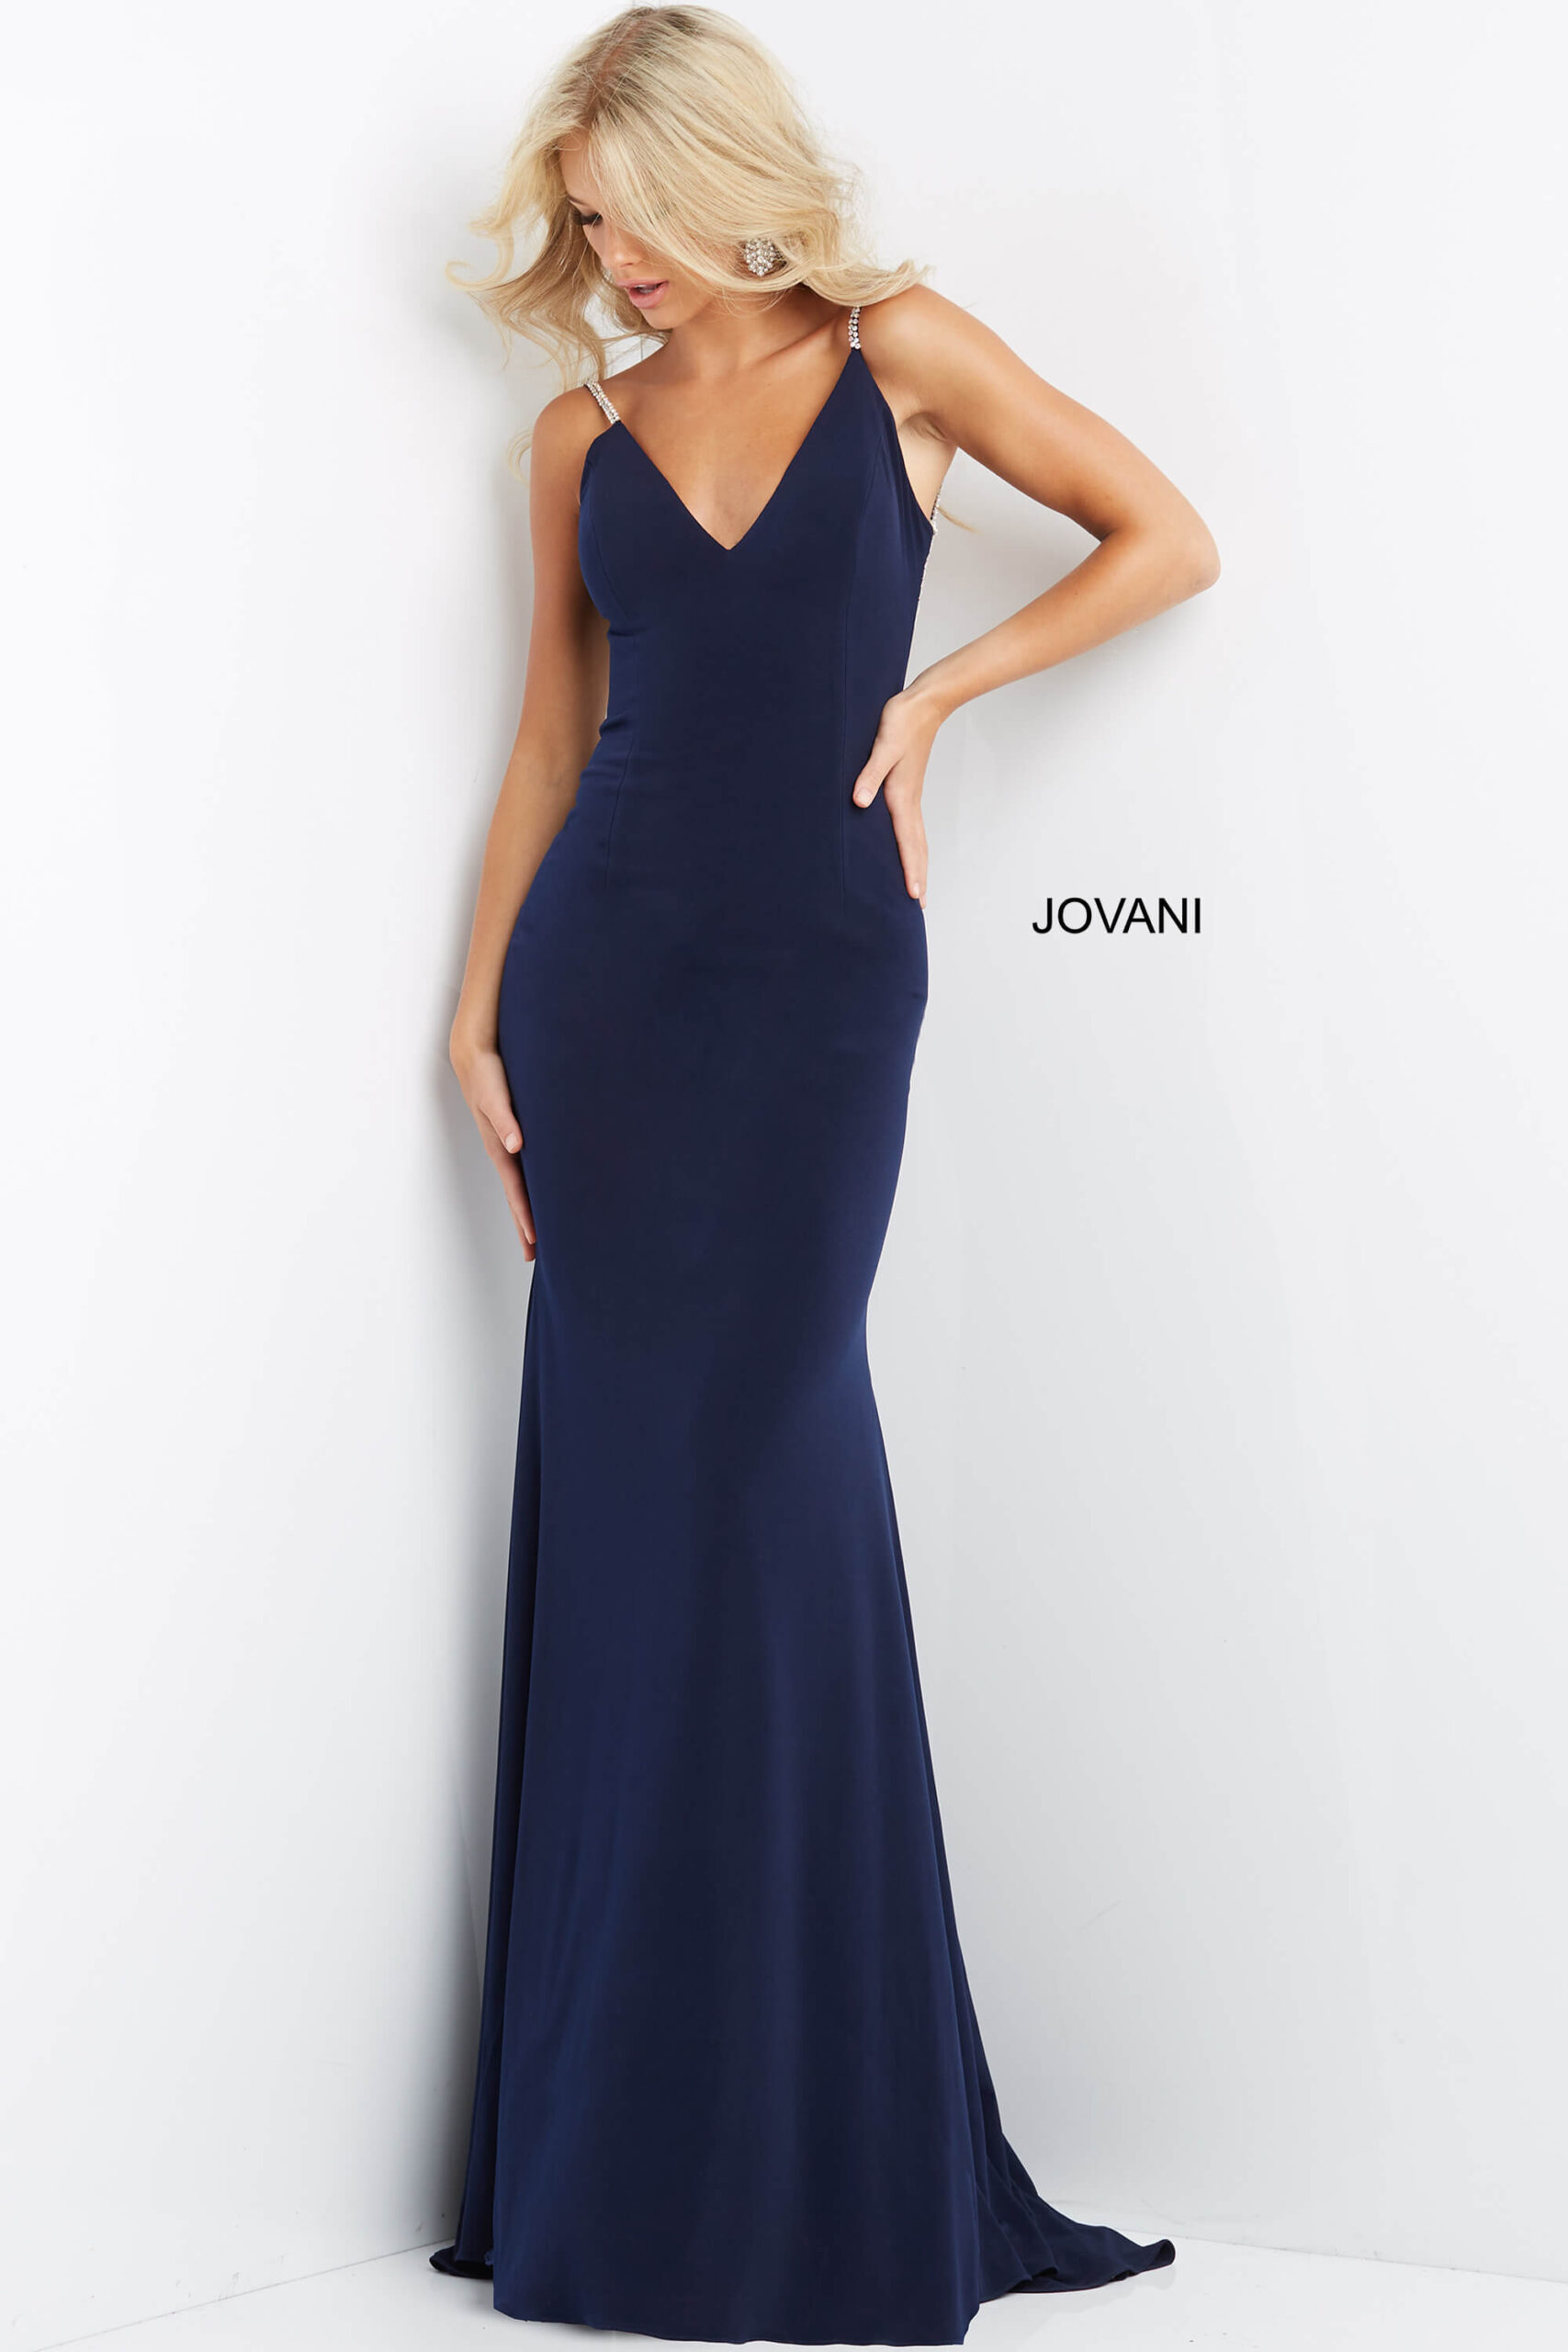 Jovani 07297 Navy Fitted Open Embellished Back Dress